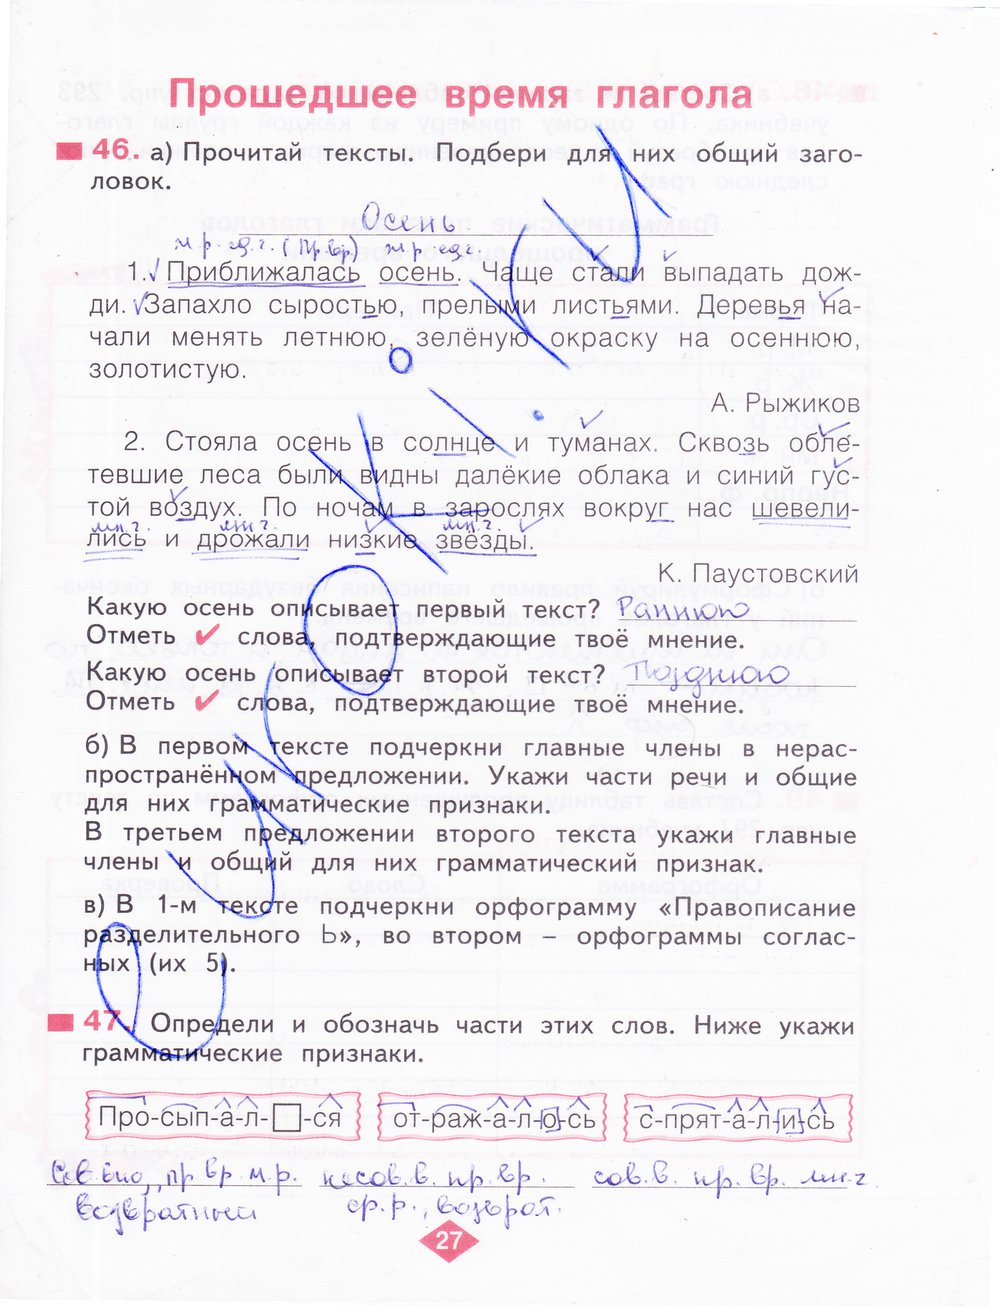 гдз 4 класс рабочая тетрадь часть 2 страница 27 русский язык Нечаева, Воскресенская